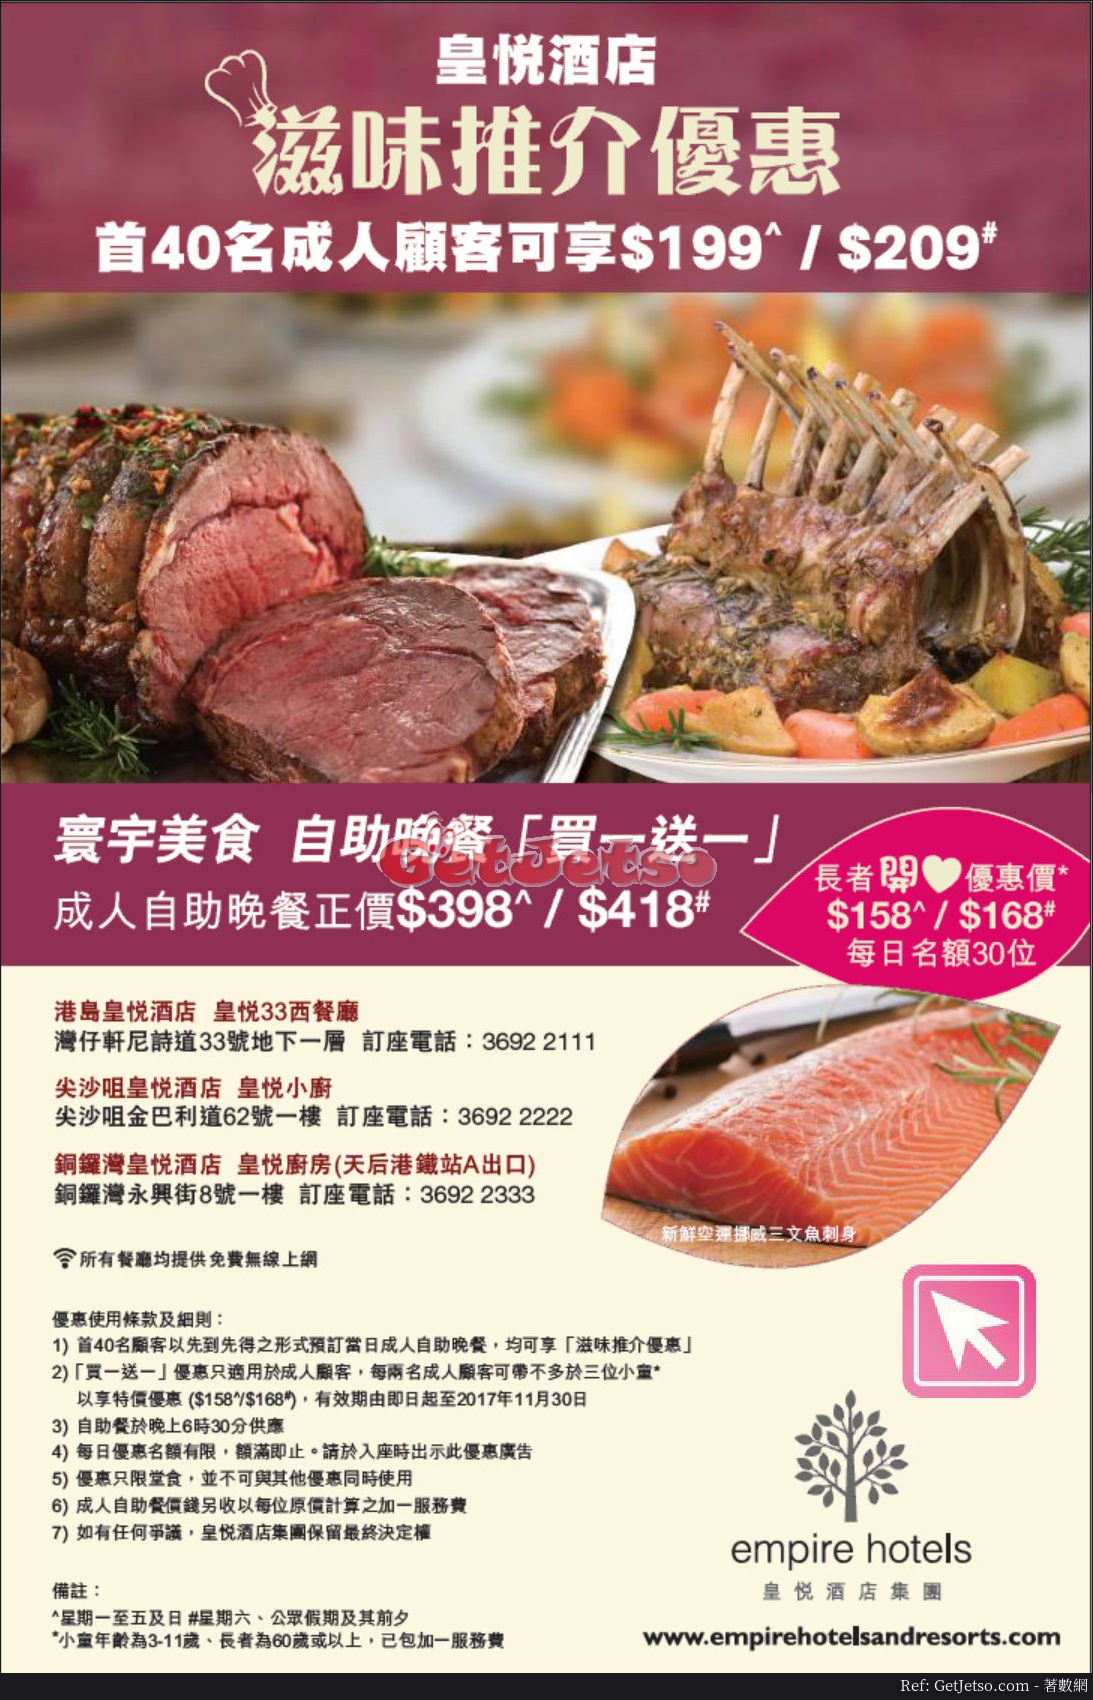 皇悅酒店自助晚餐買1送1優惠(至17年11月30日)圖片1